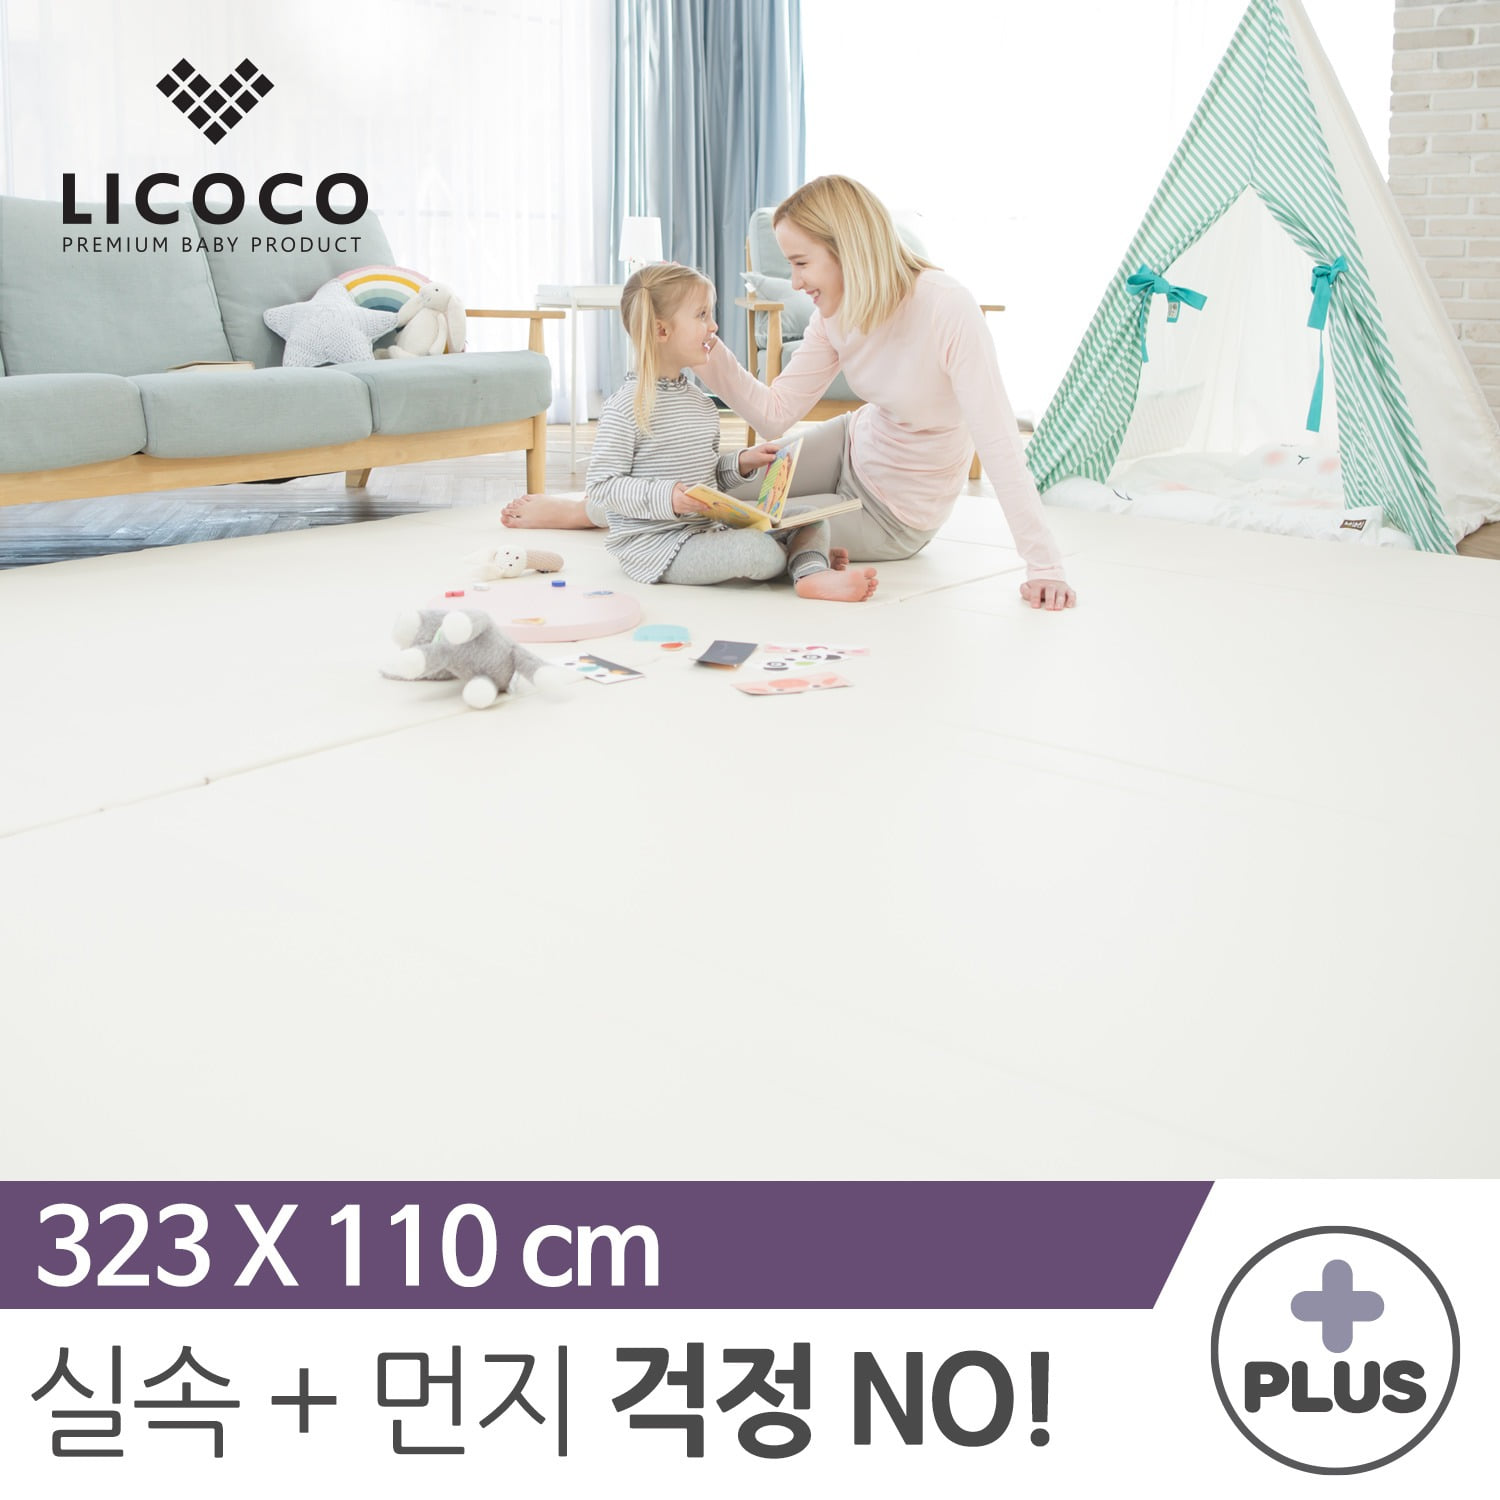 [리코코] NEW 클린롤매트 Plus 323x110cm 아이보리 / 거실 복도 놀이방 층간소음 아기 매트